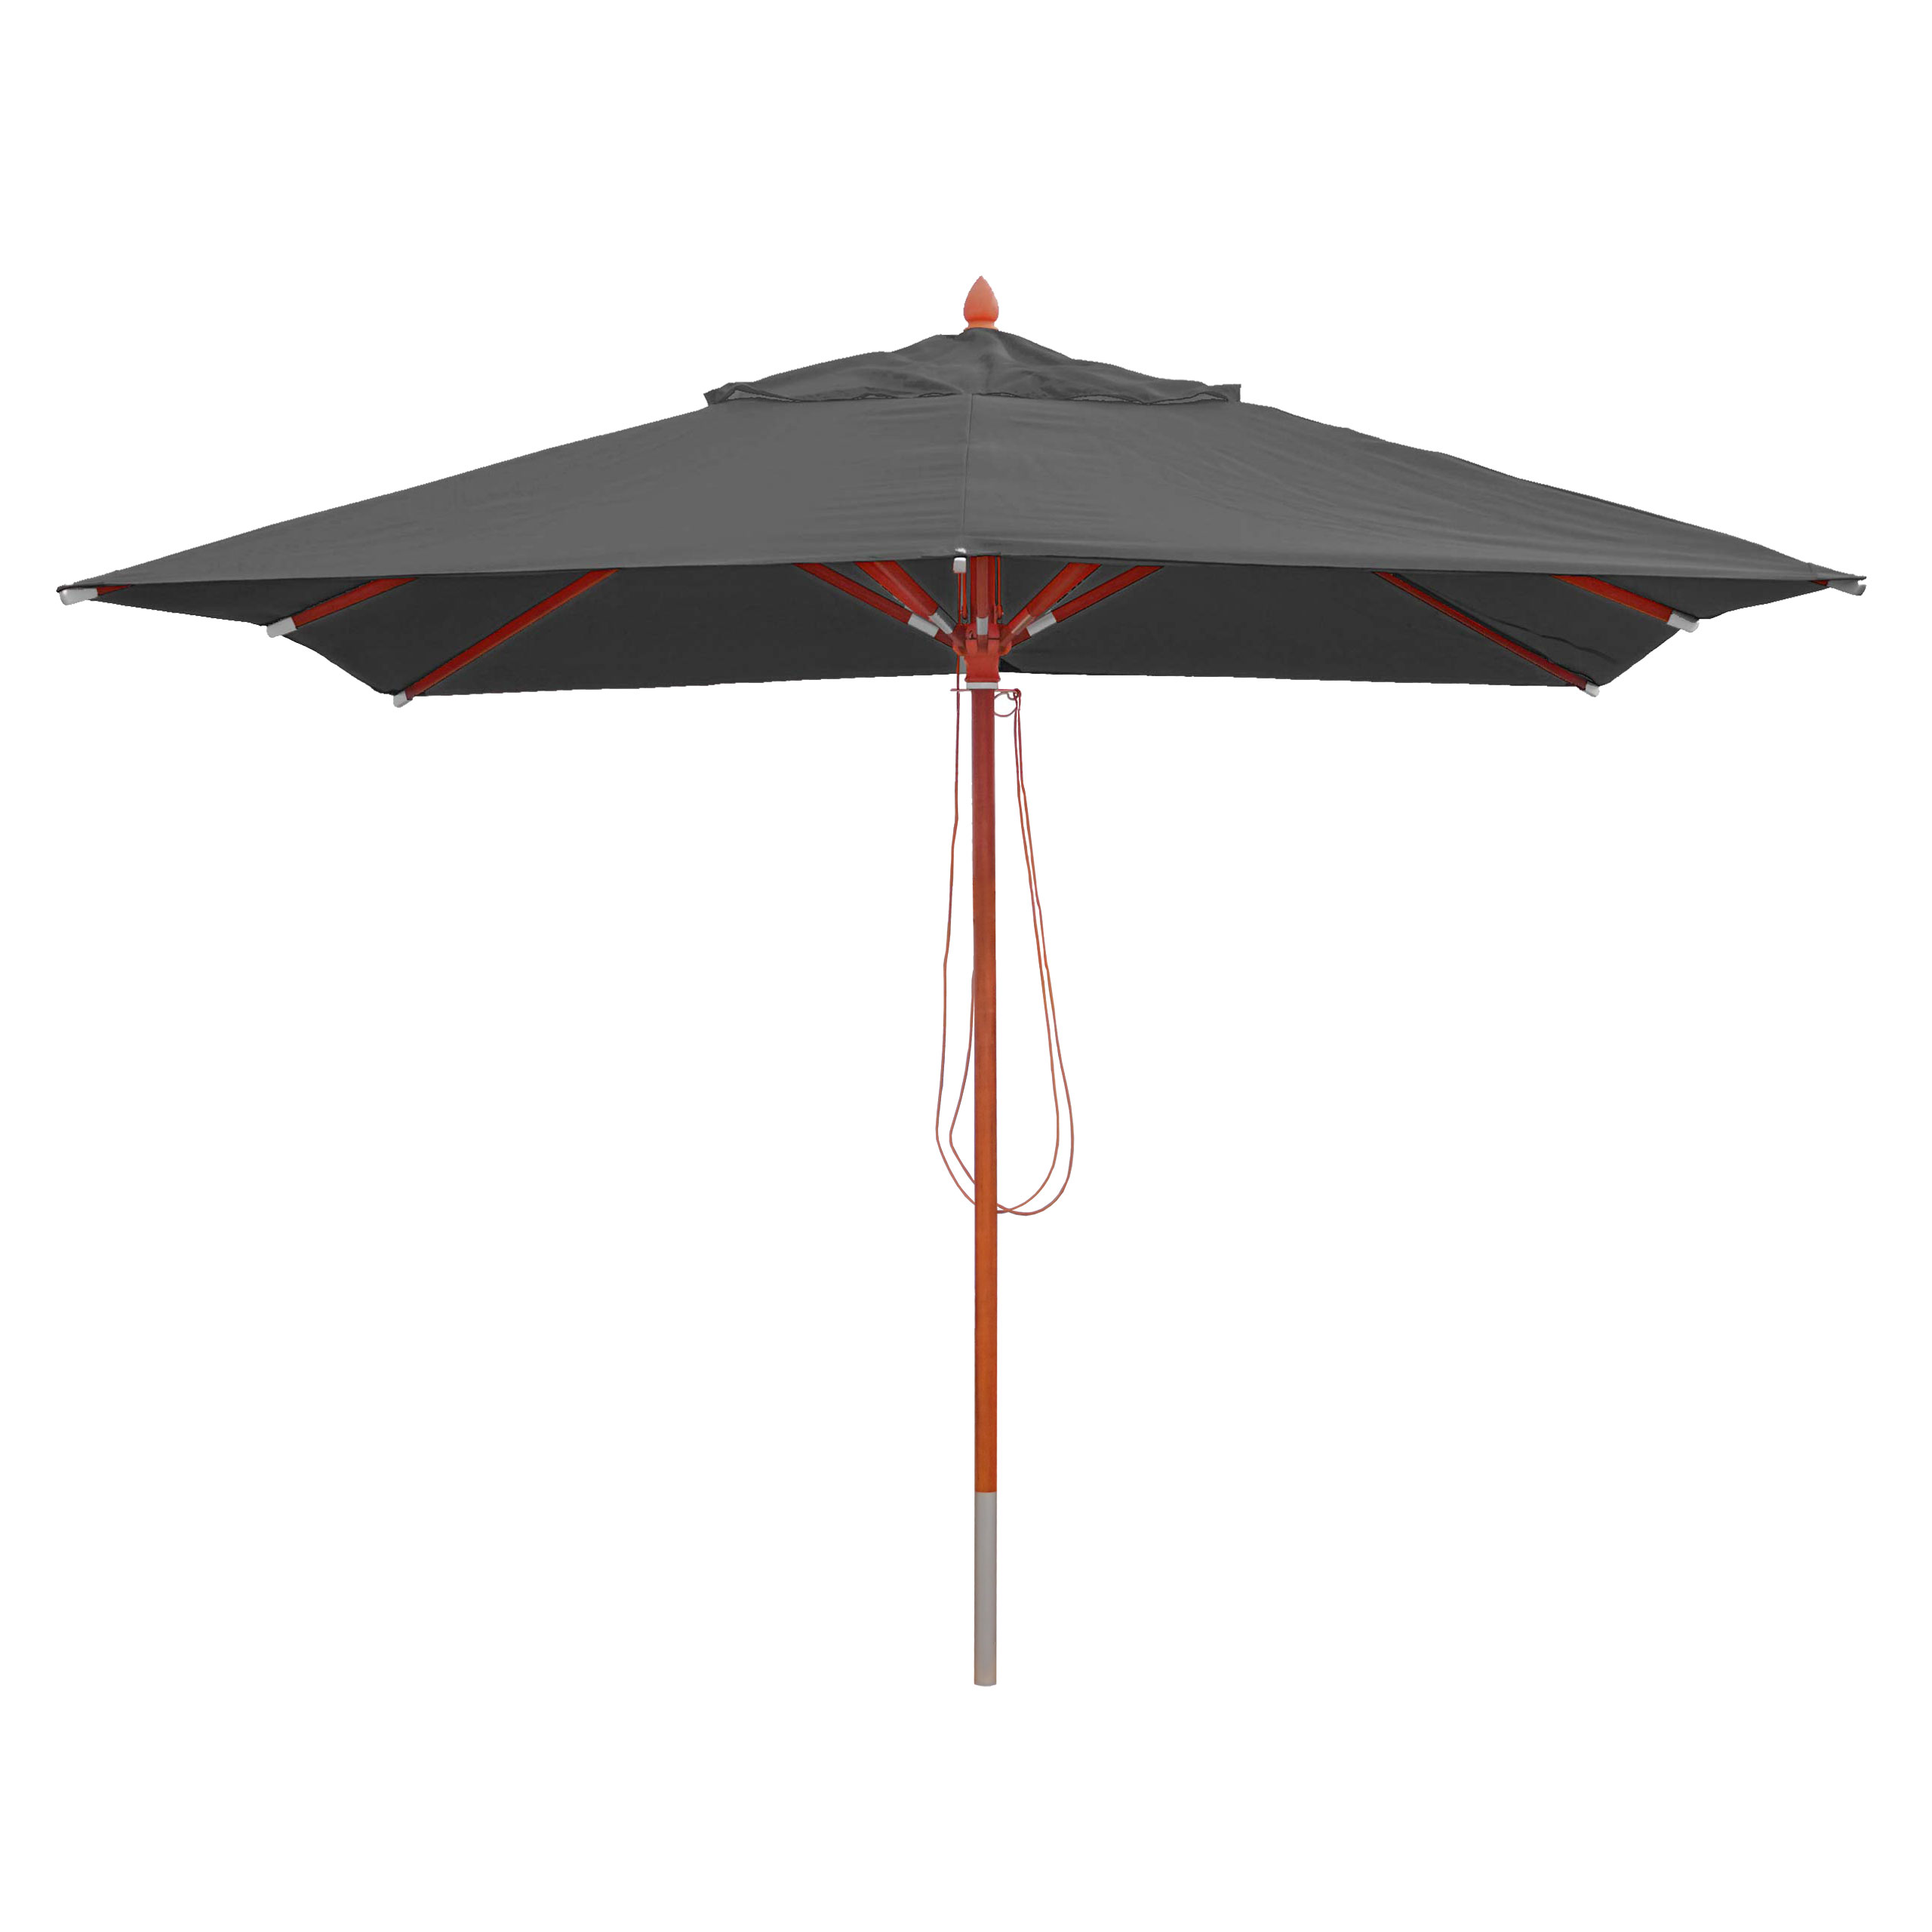 Marktschirm Schirm Holz Sonnenschirm 3m anthrazit Gartenschirm mit Seilzug 